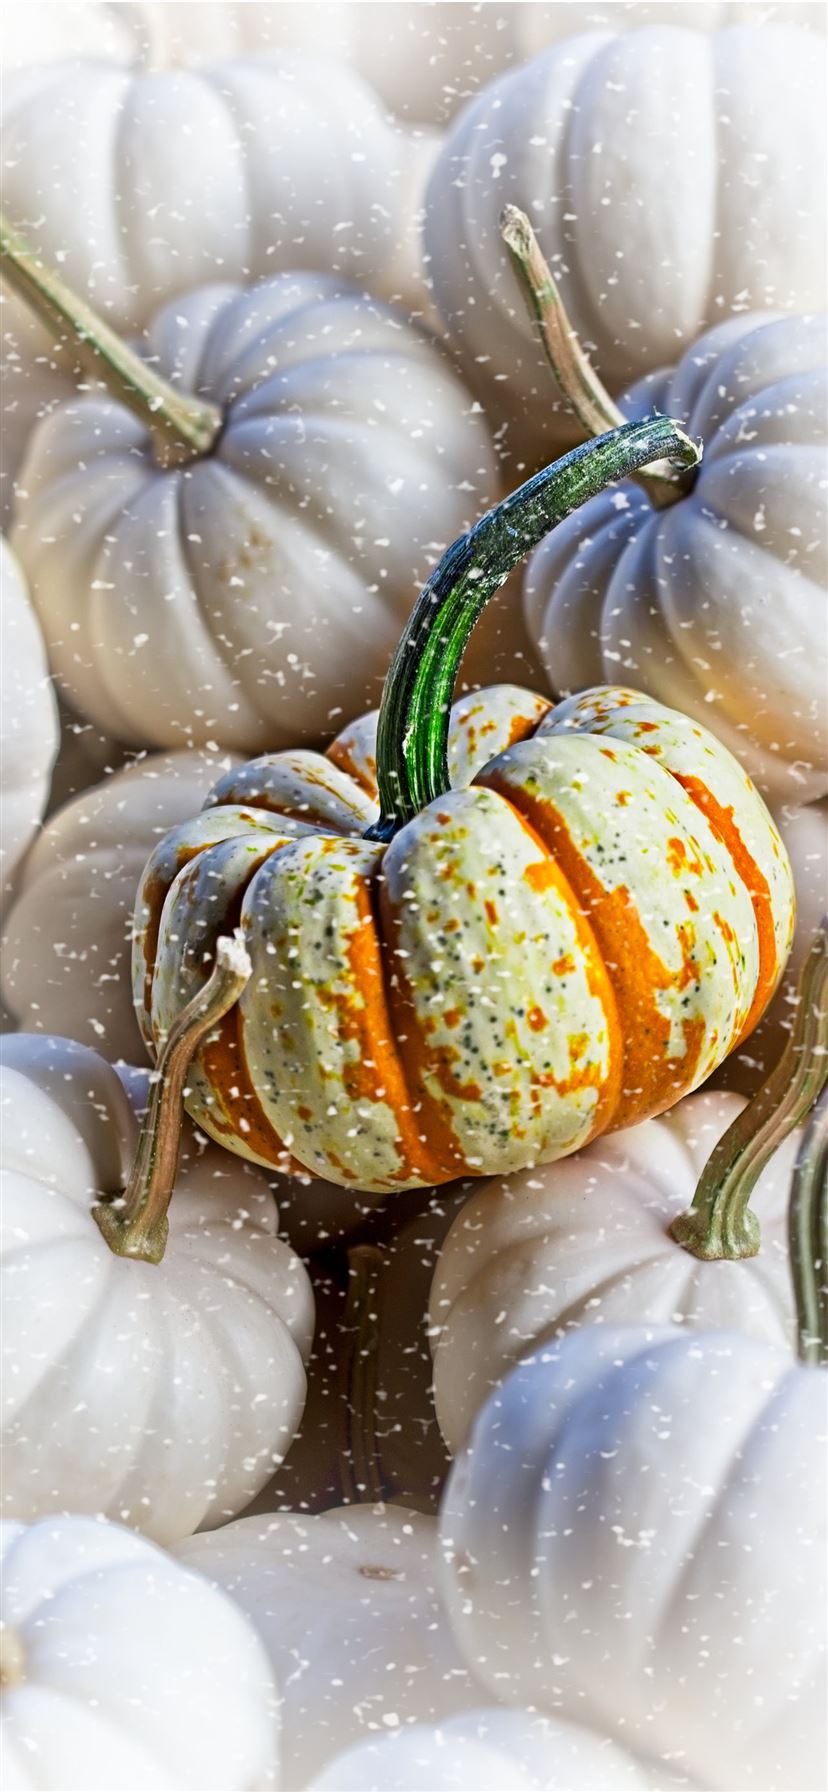 White Pumpkin Background